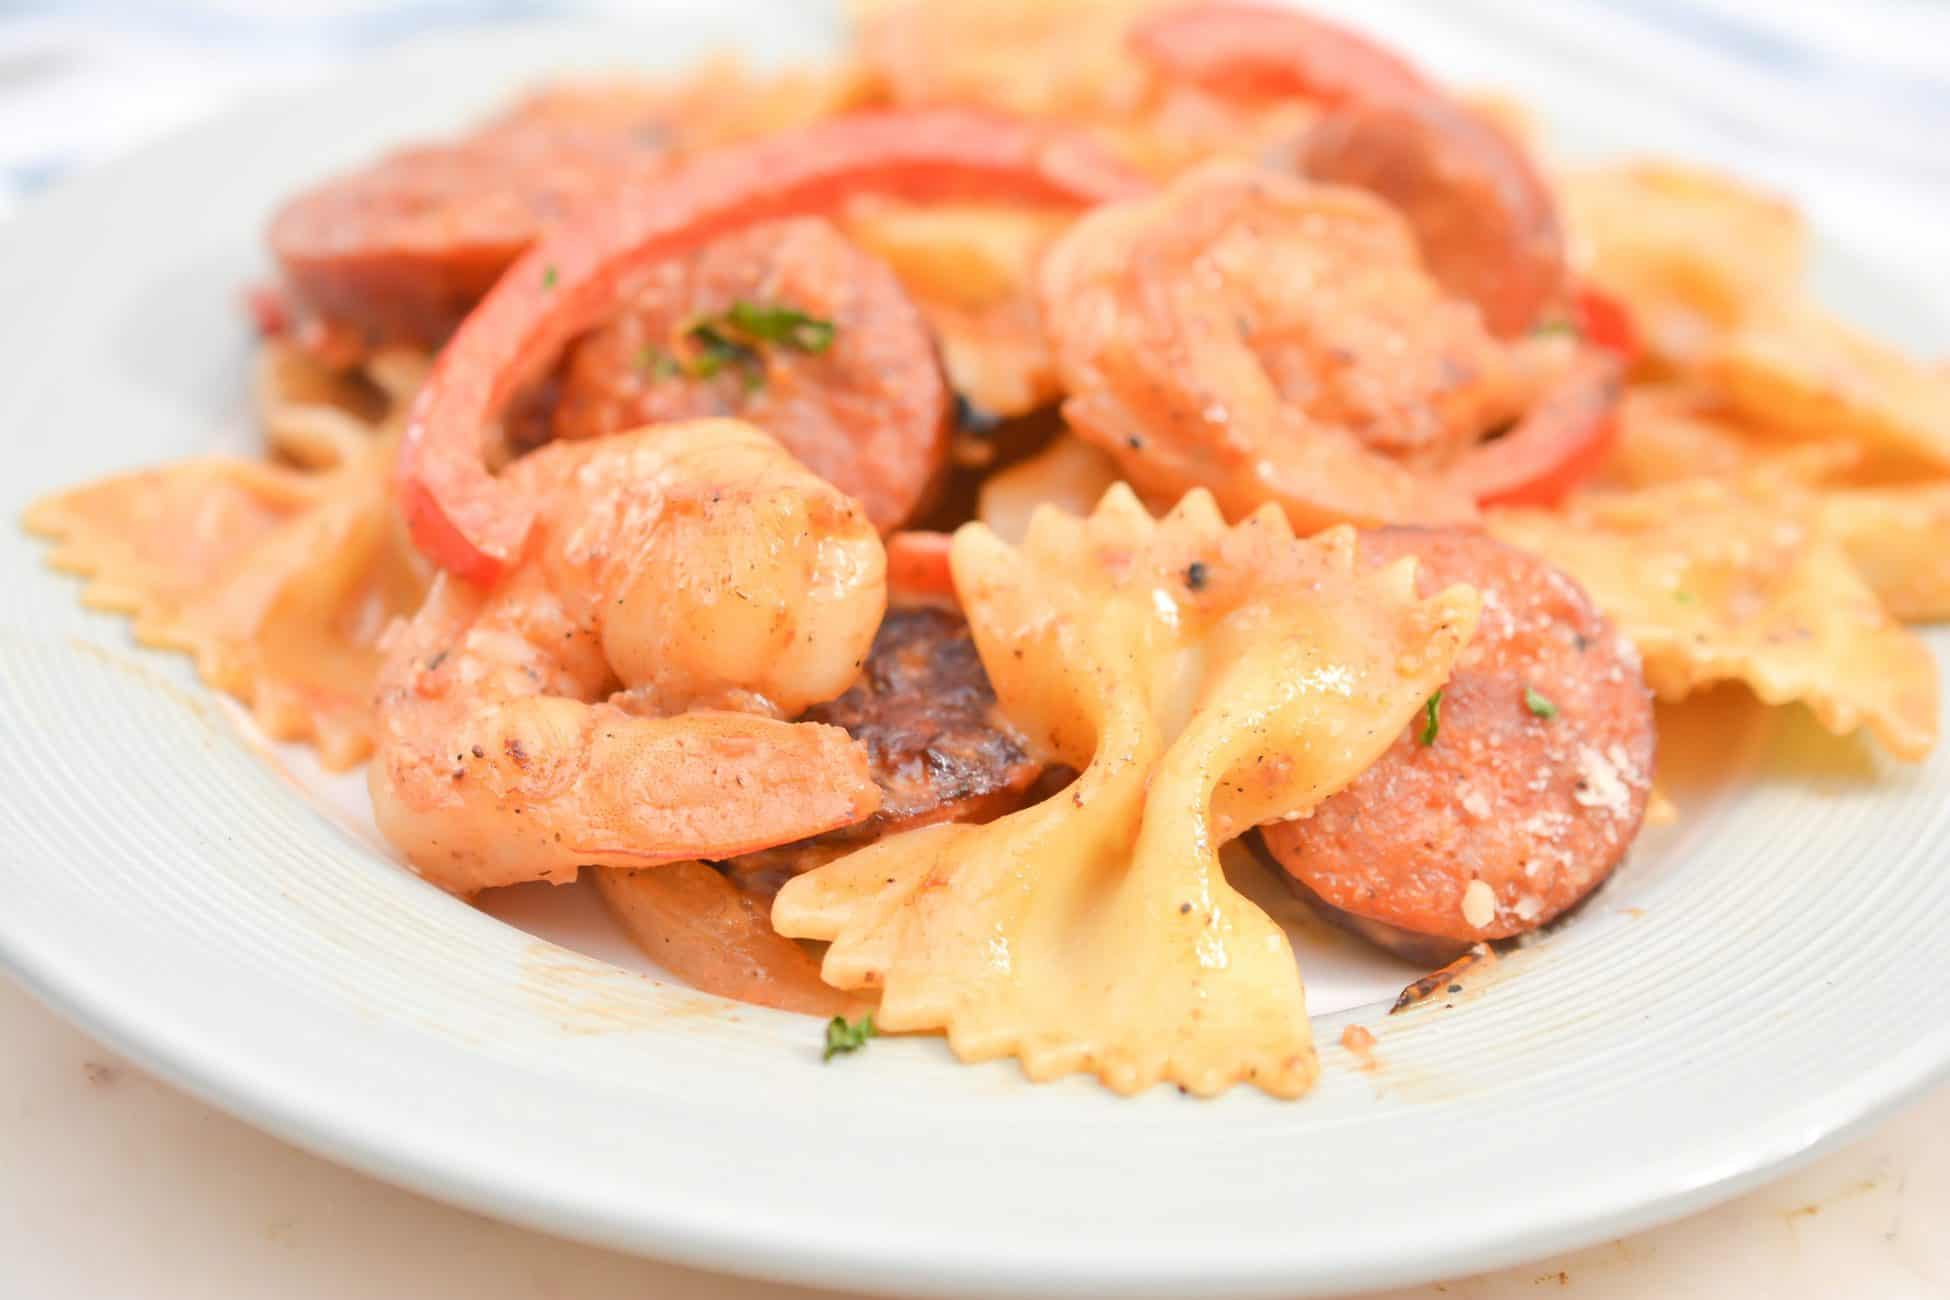 Cajun Shrimp Pasta with Sausage